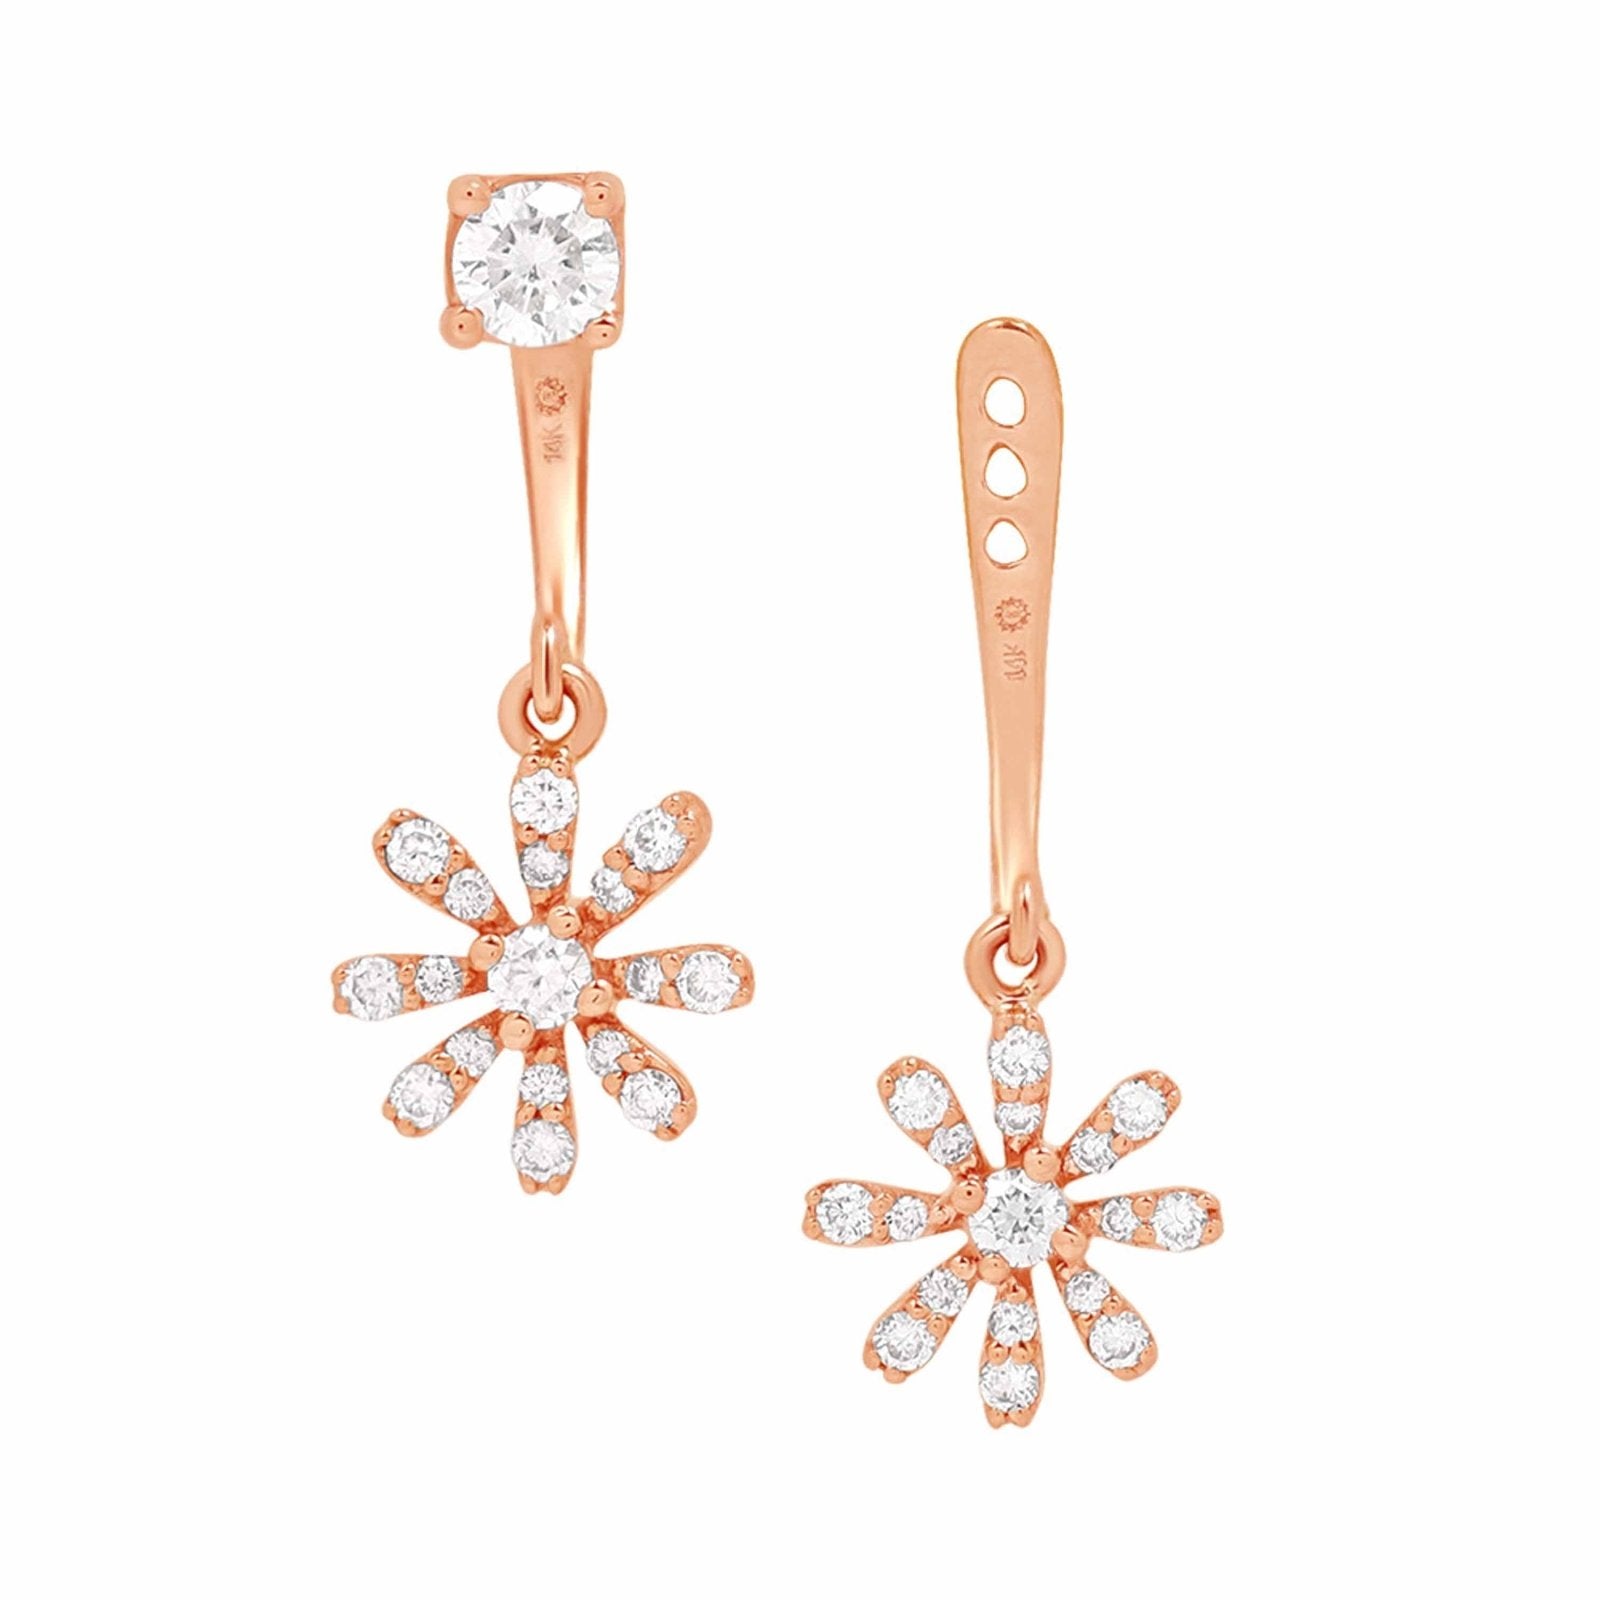 Diamond Flower Ear Jackets & Studs Earrings Estella Collection #product_description# 17582 14k Birthstone Birthstone Earrings #tag4# #tag5# #tag6# #tag7# #tag8# #tag9# #tag10#